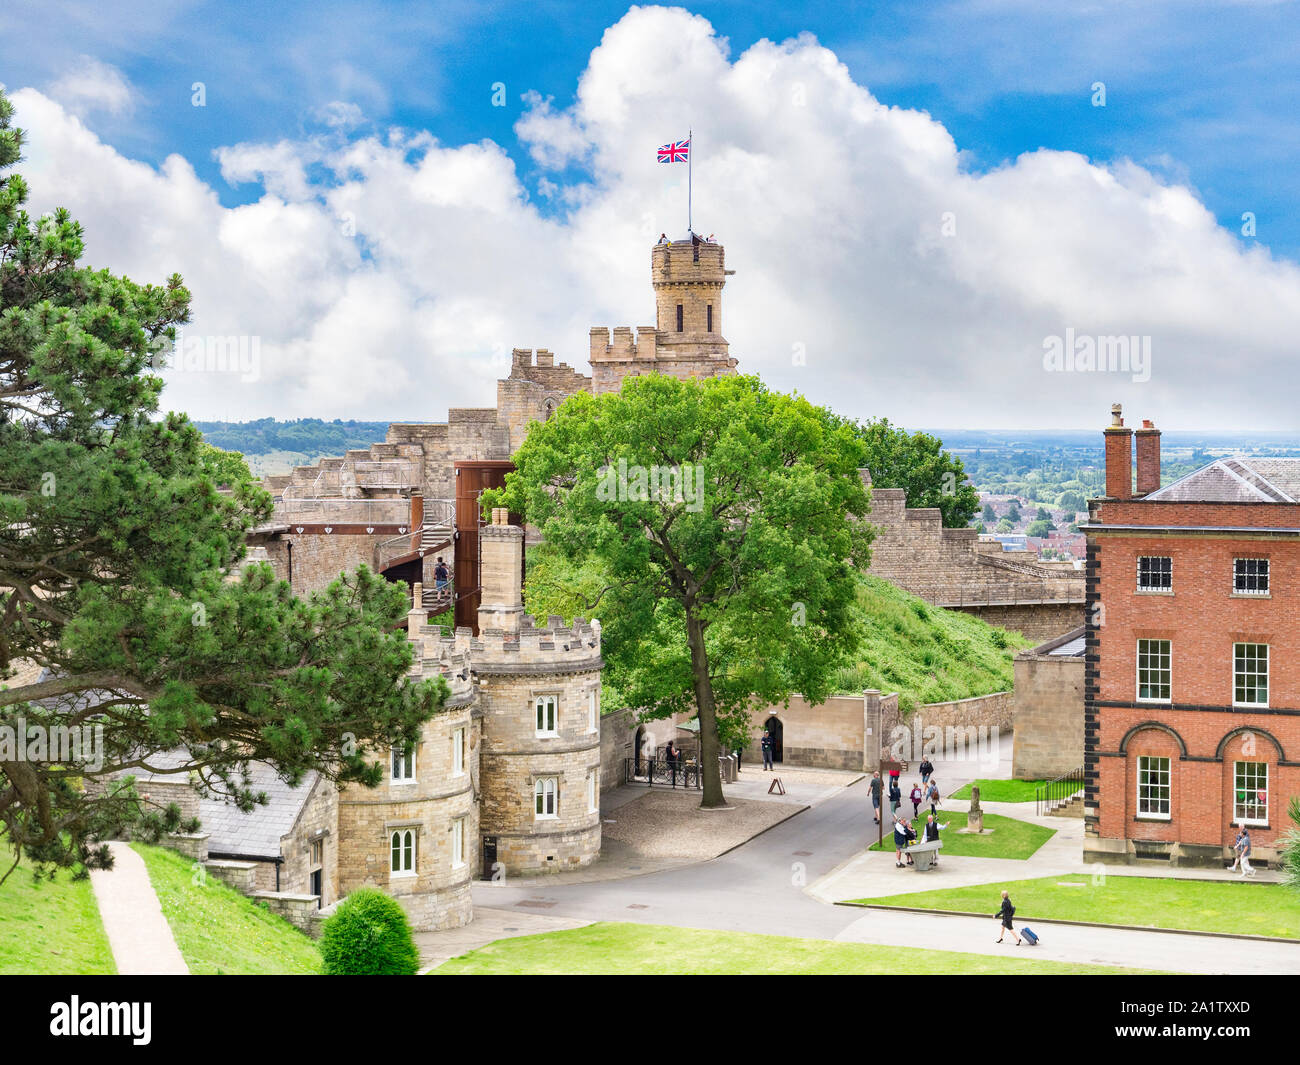 2 Juli 2019: Lincoln, Großbritannien - Das Schloss, hohe Betrachtungswinkel mit weit entfernten Menschen herumlaufen. Das Schloss ist ungewöhnlich in zwei mottes, einer von nur zwei Stockfoto